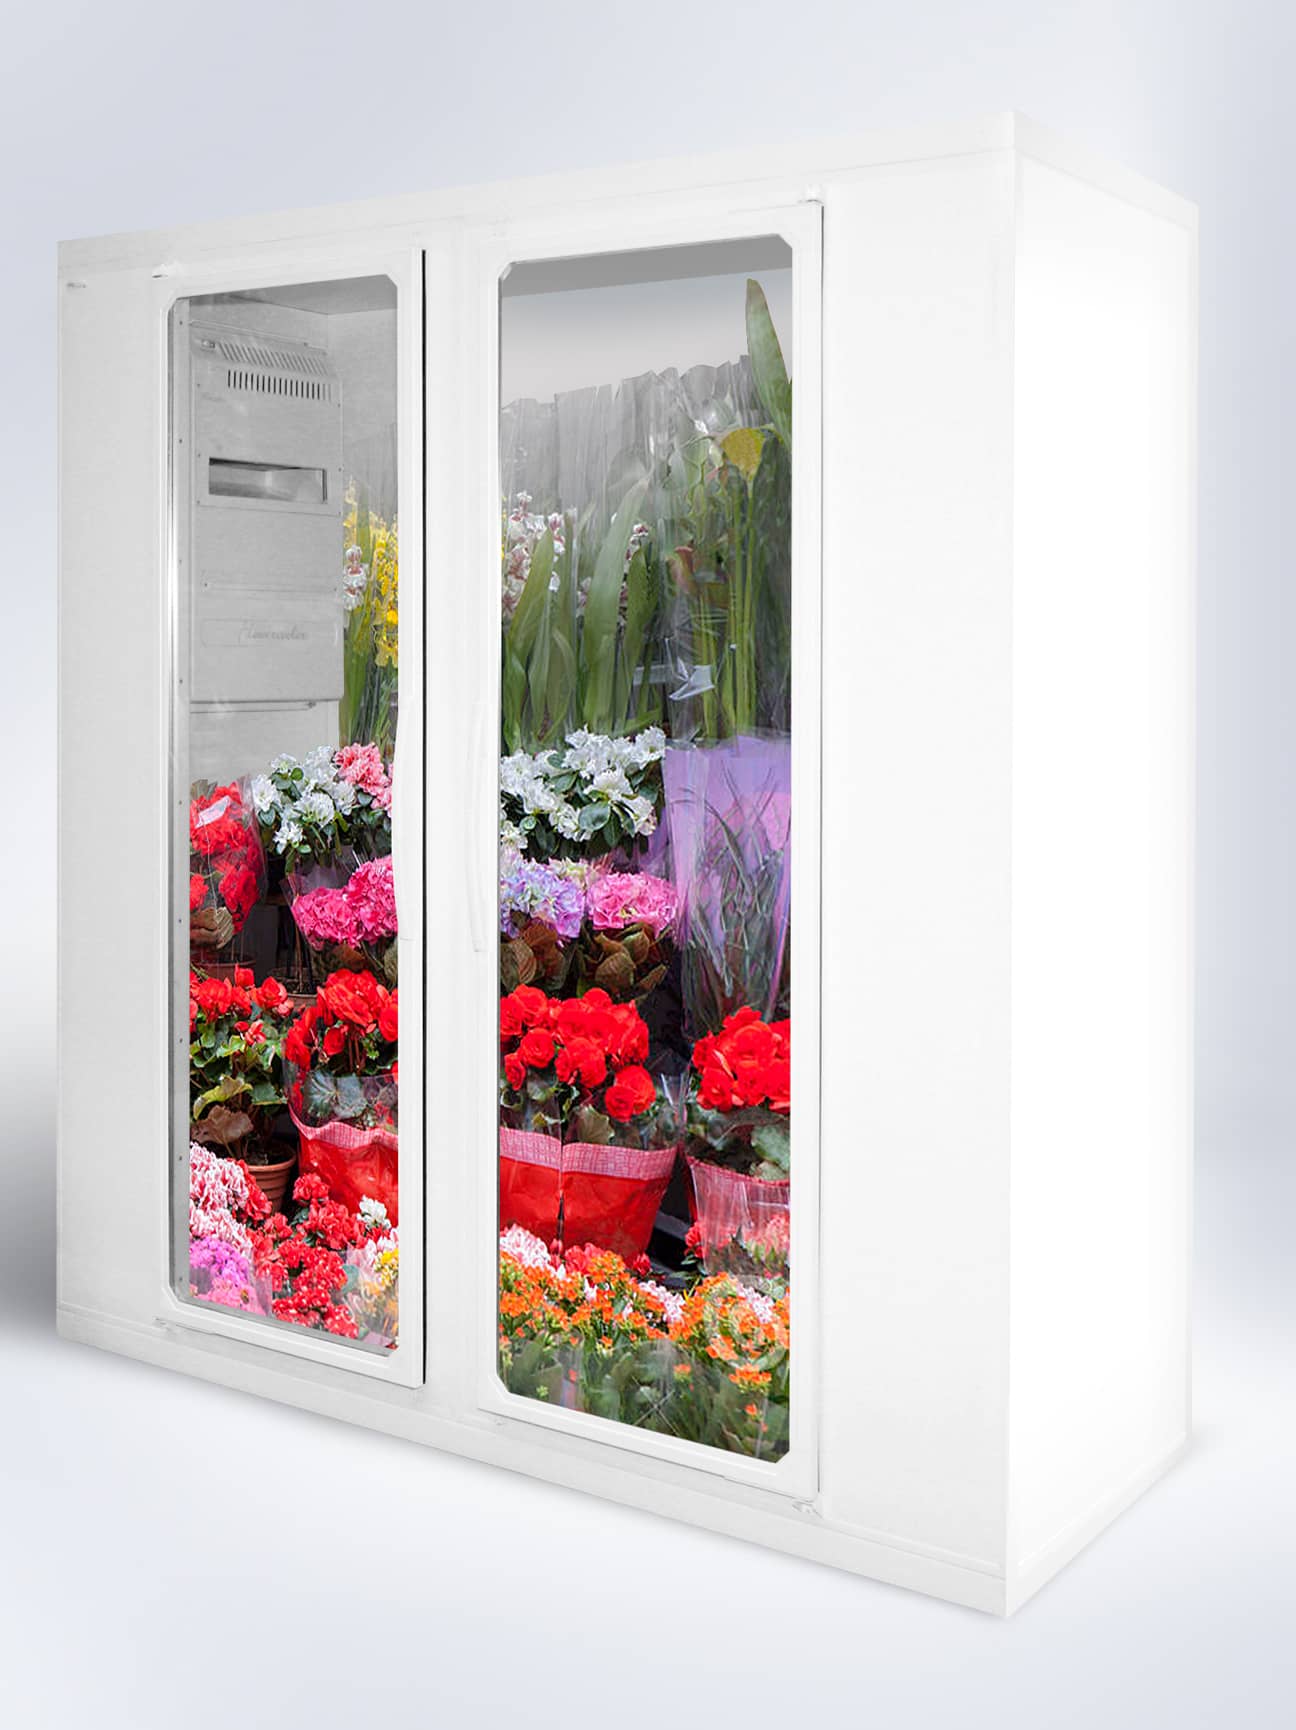 Esistono frigoriferi specifici per la conservazione dei fiori?